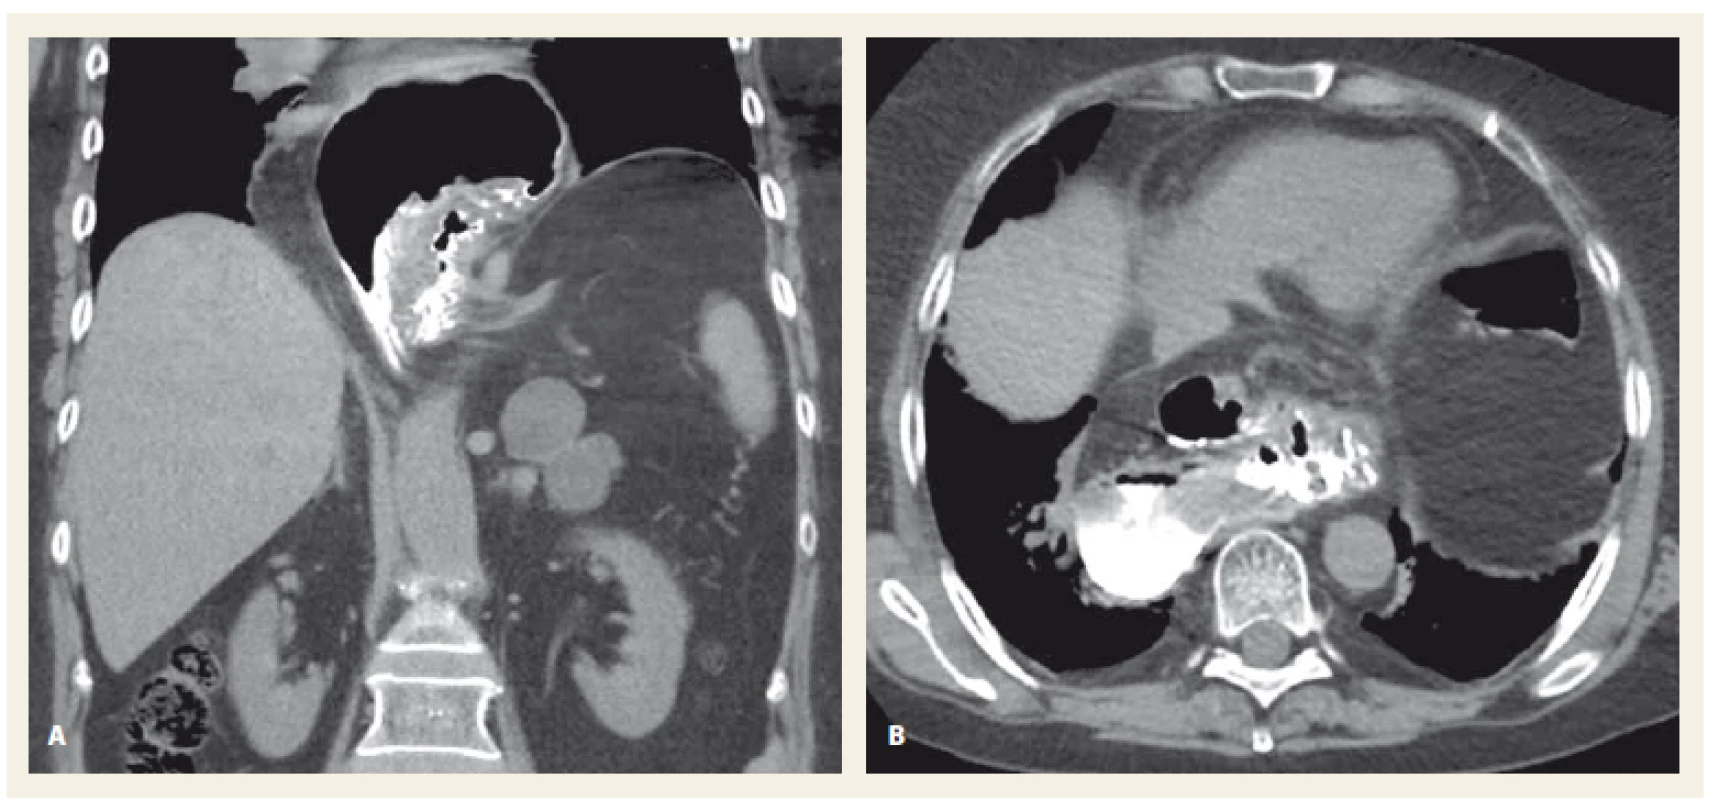 CT vyšetření břicha, kontrastní látka podaná per os, koronární rovina (A), transverzální rovina (B). Objemná herniace
žaludku do hrudníku při organoaxiálním volvulu žaludku.<br>
Fig. 4. Abdominal CT scan, oral contrast dye, coronal plane (A), transversal plane (B). A large herniation of the stomach
to thoracic cavity with an organoaxial stomach volvulus.